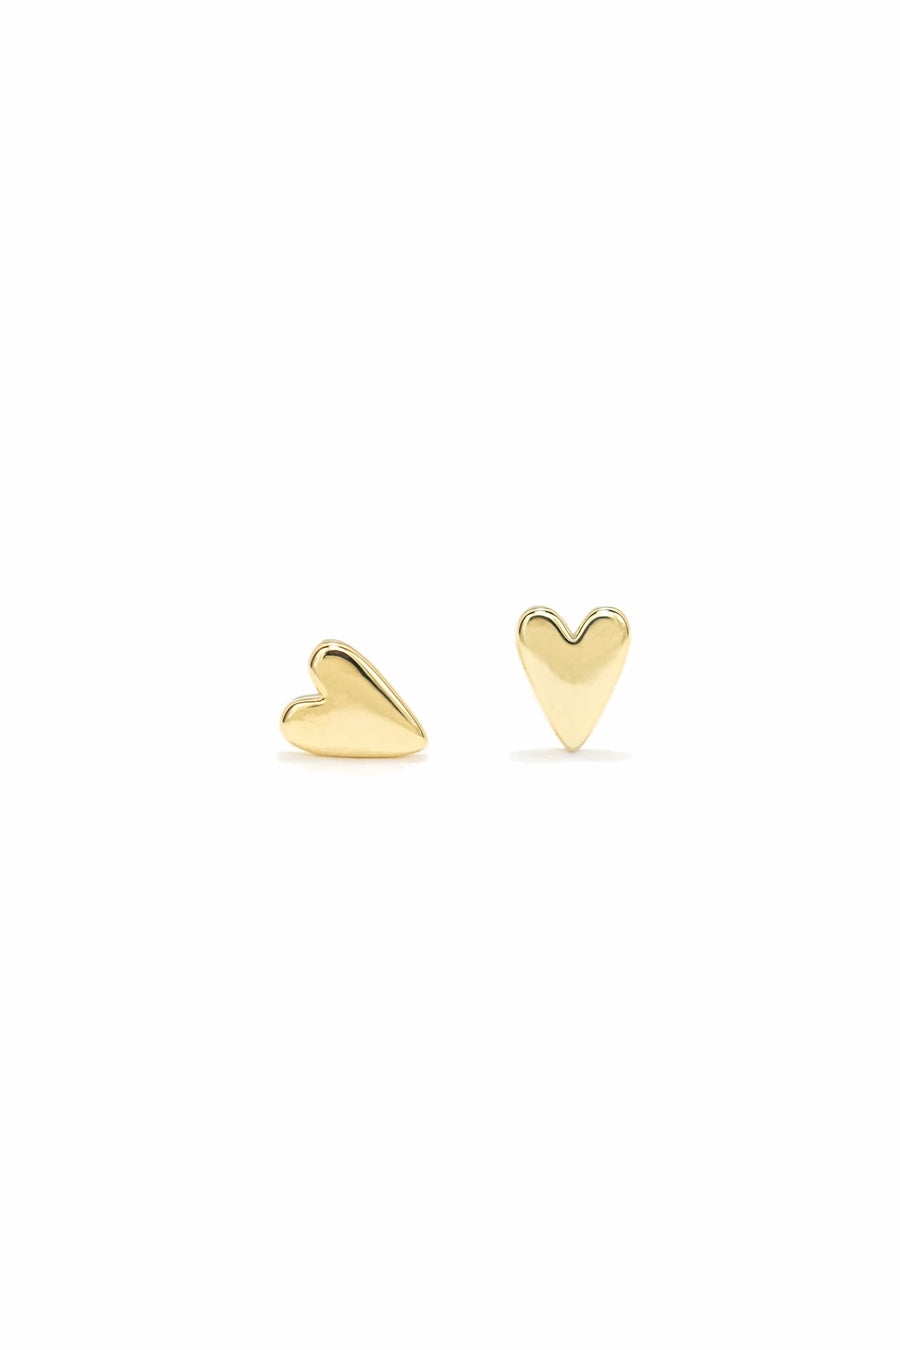 Everly Heart Stud Earrings